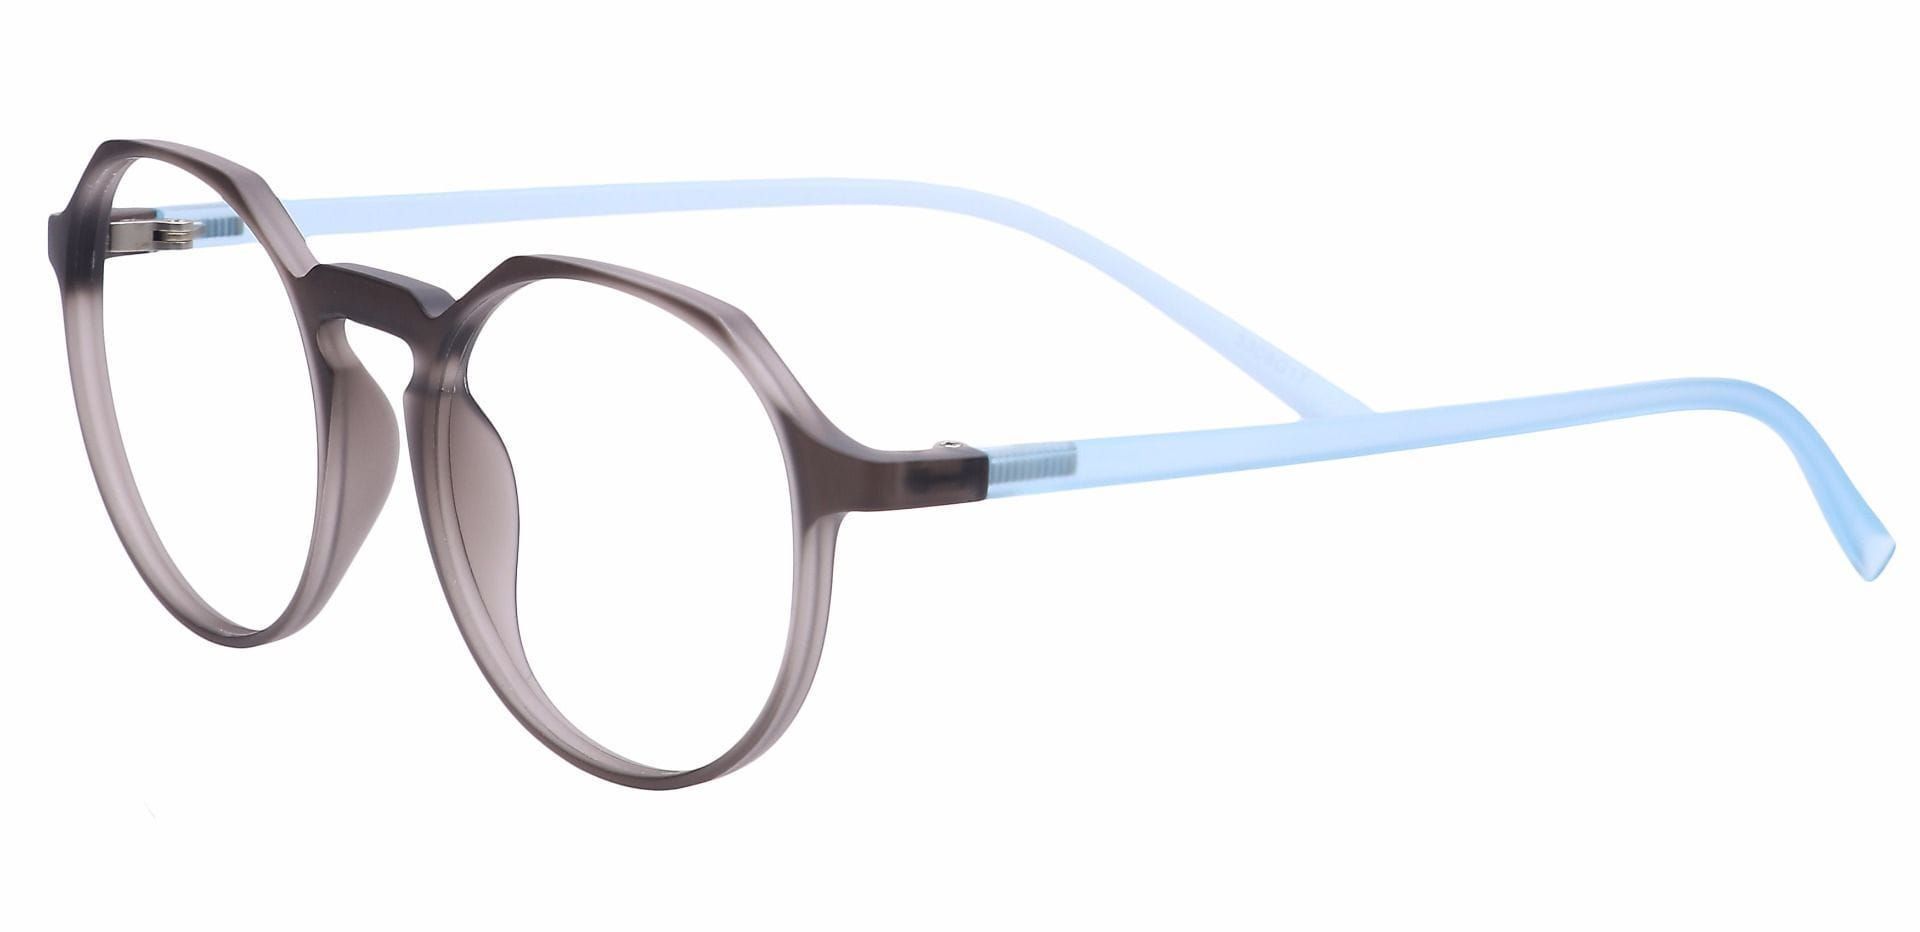 Dash Oval Progressive Glasses - Gray